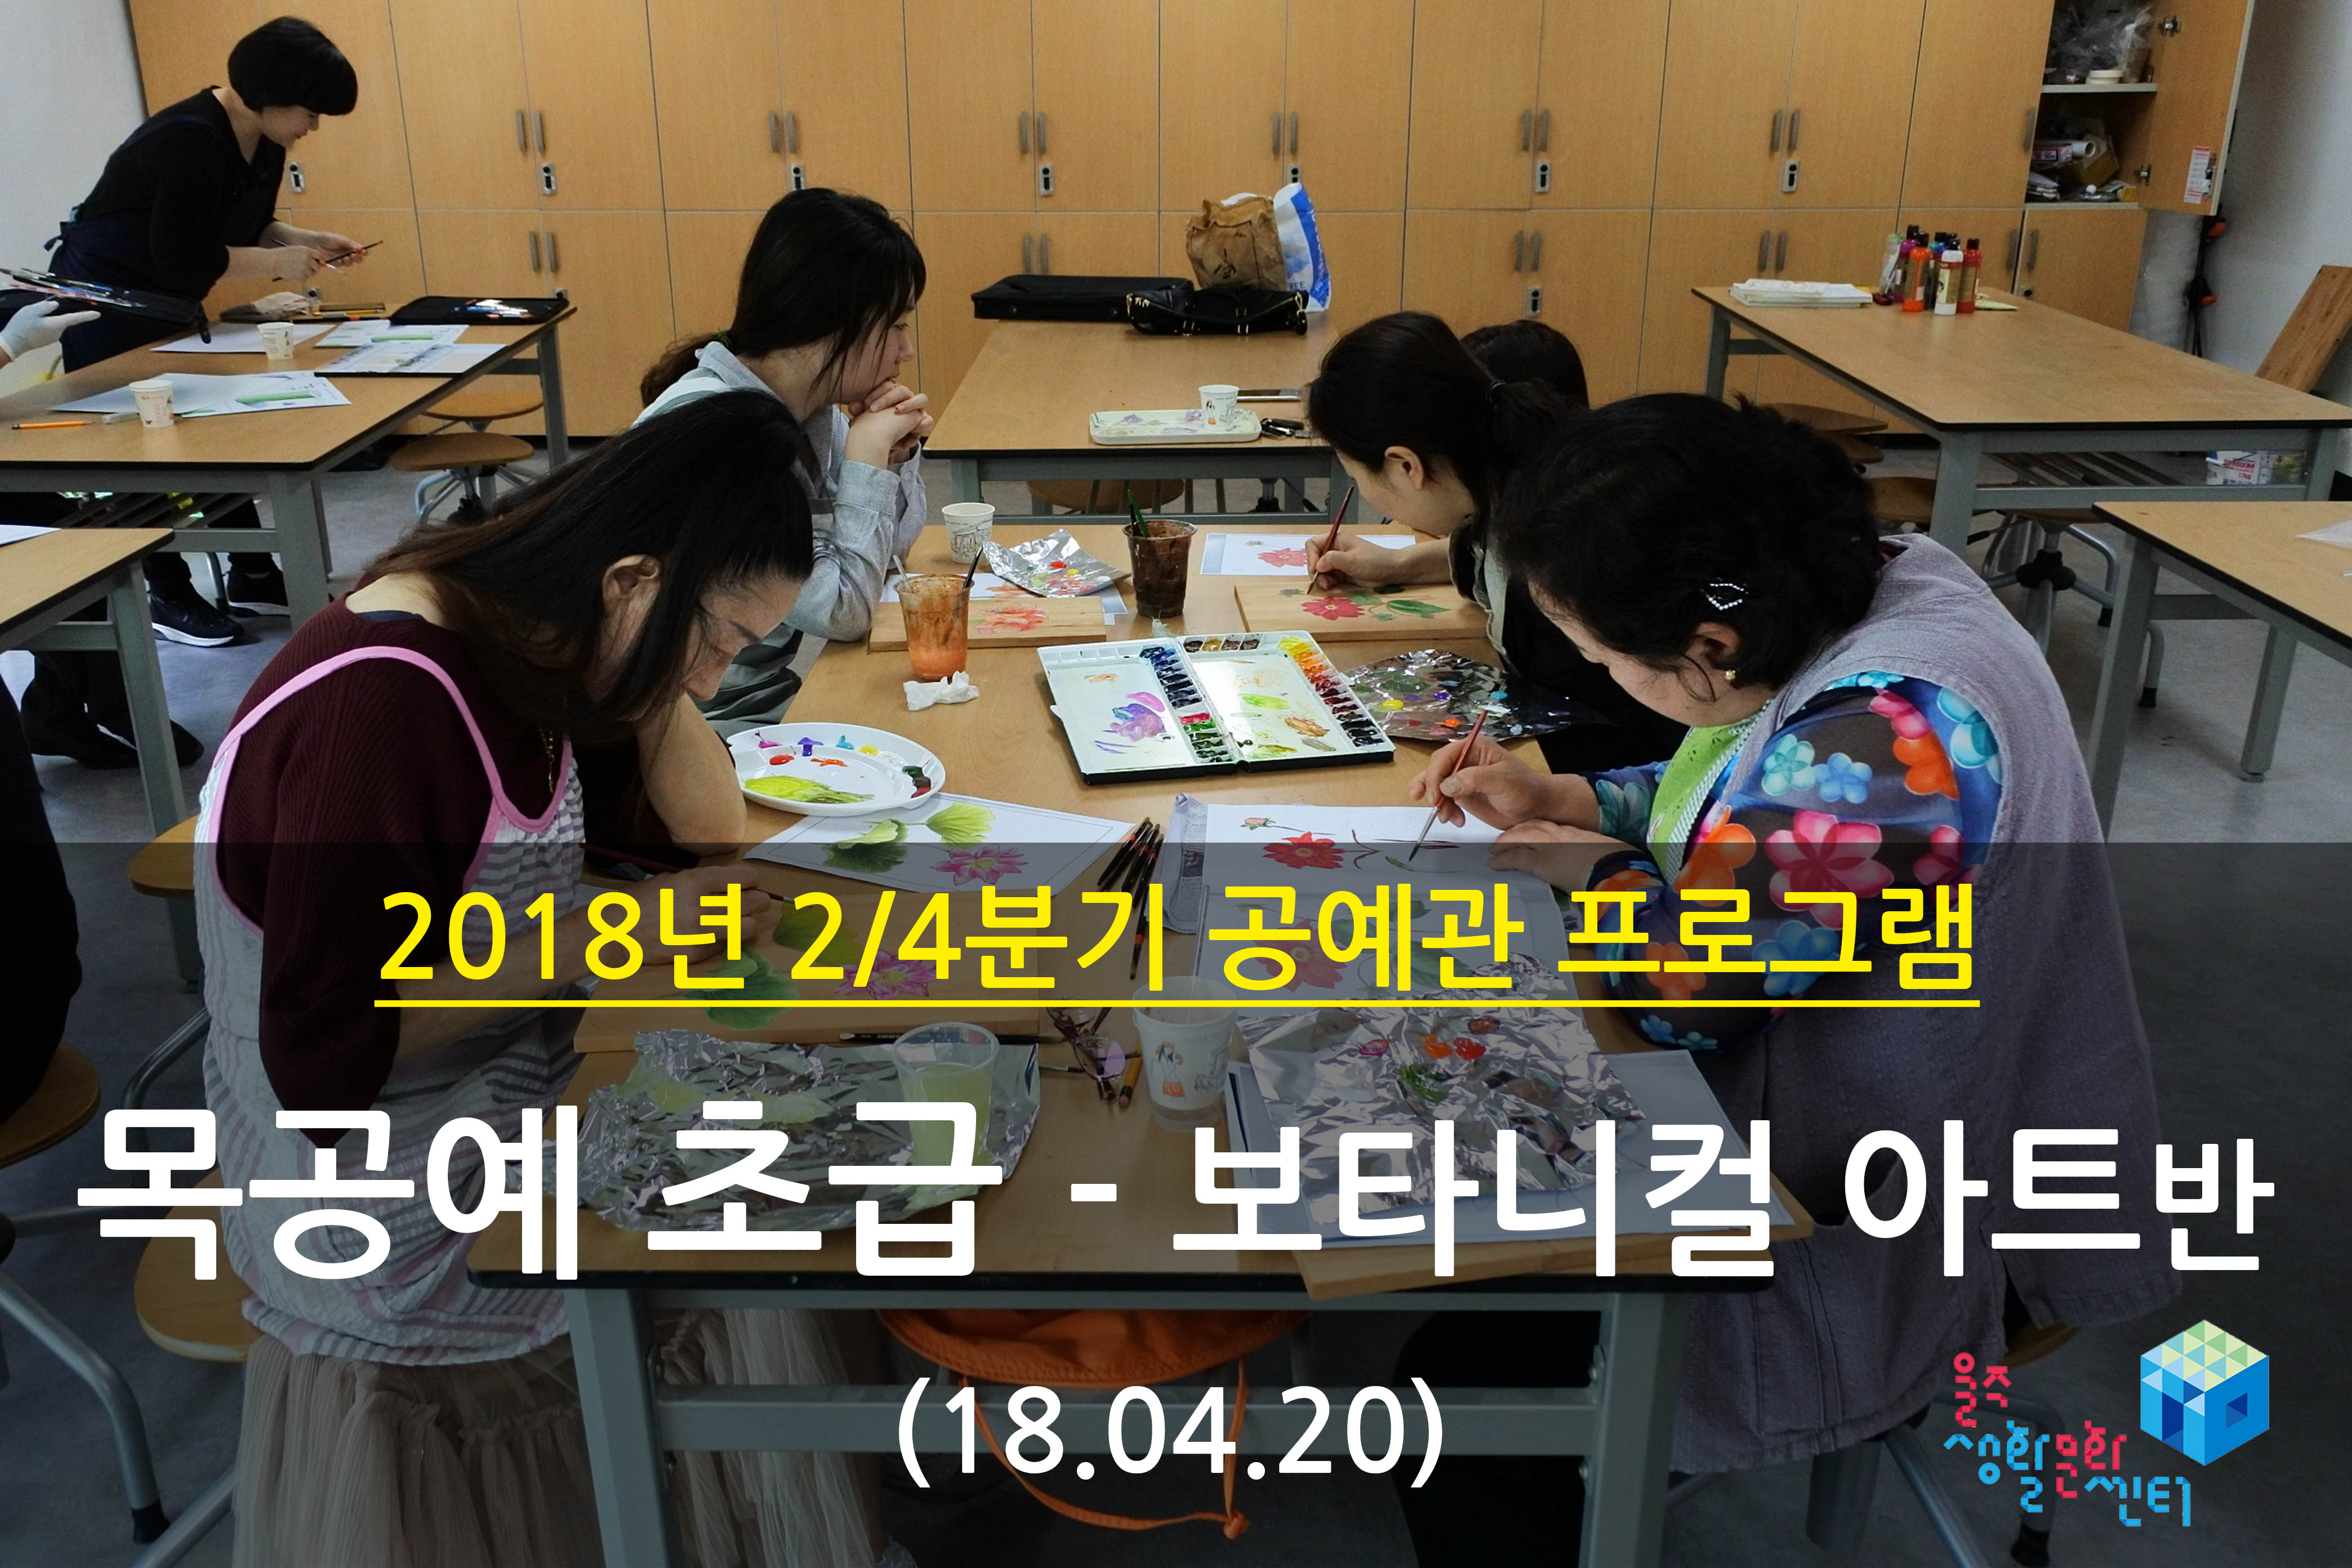 2018.04.20 _ 목공예 초급 - 보타니컬 아트반 _ 2/4분기 3주차 수업